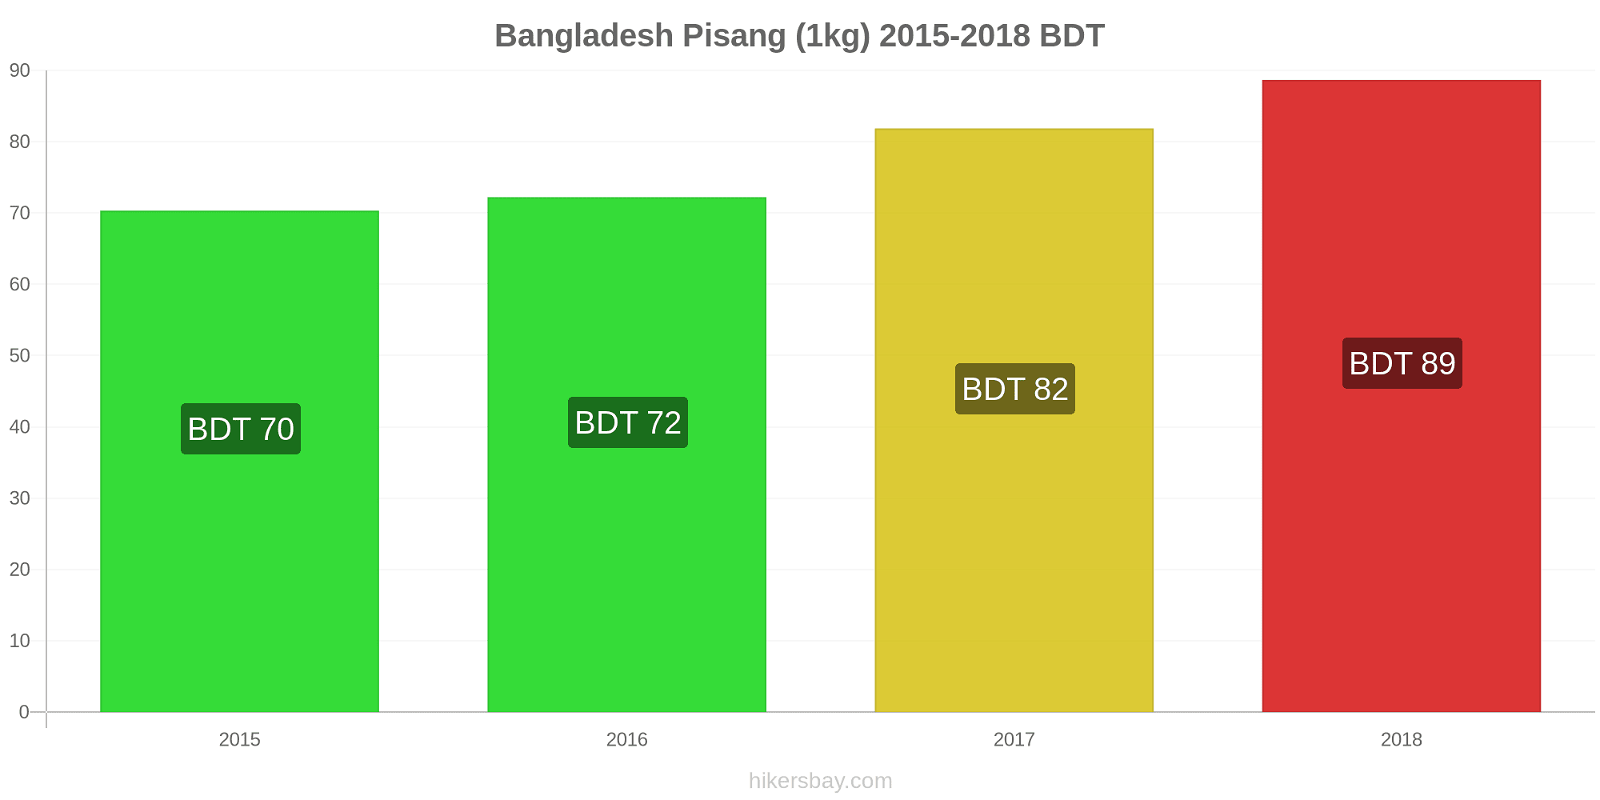 Bangladesh perubahan harga Pisang (1kg) hikersbay.com